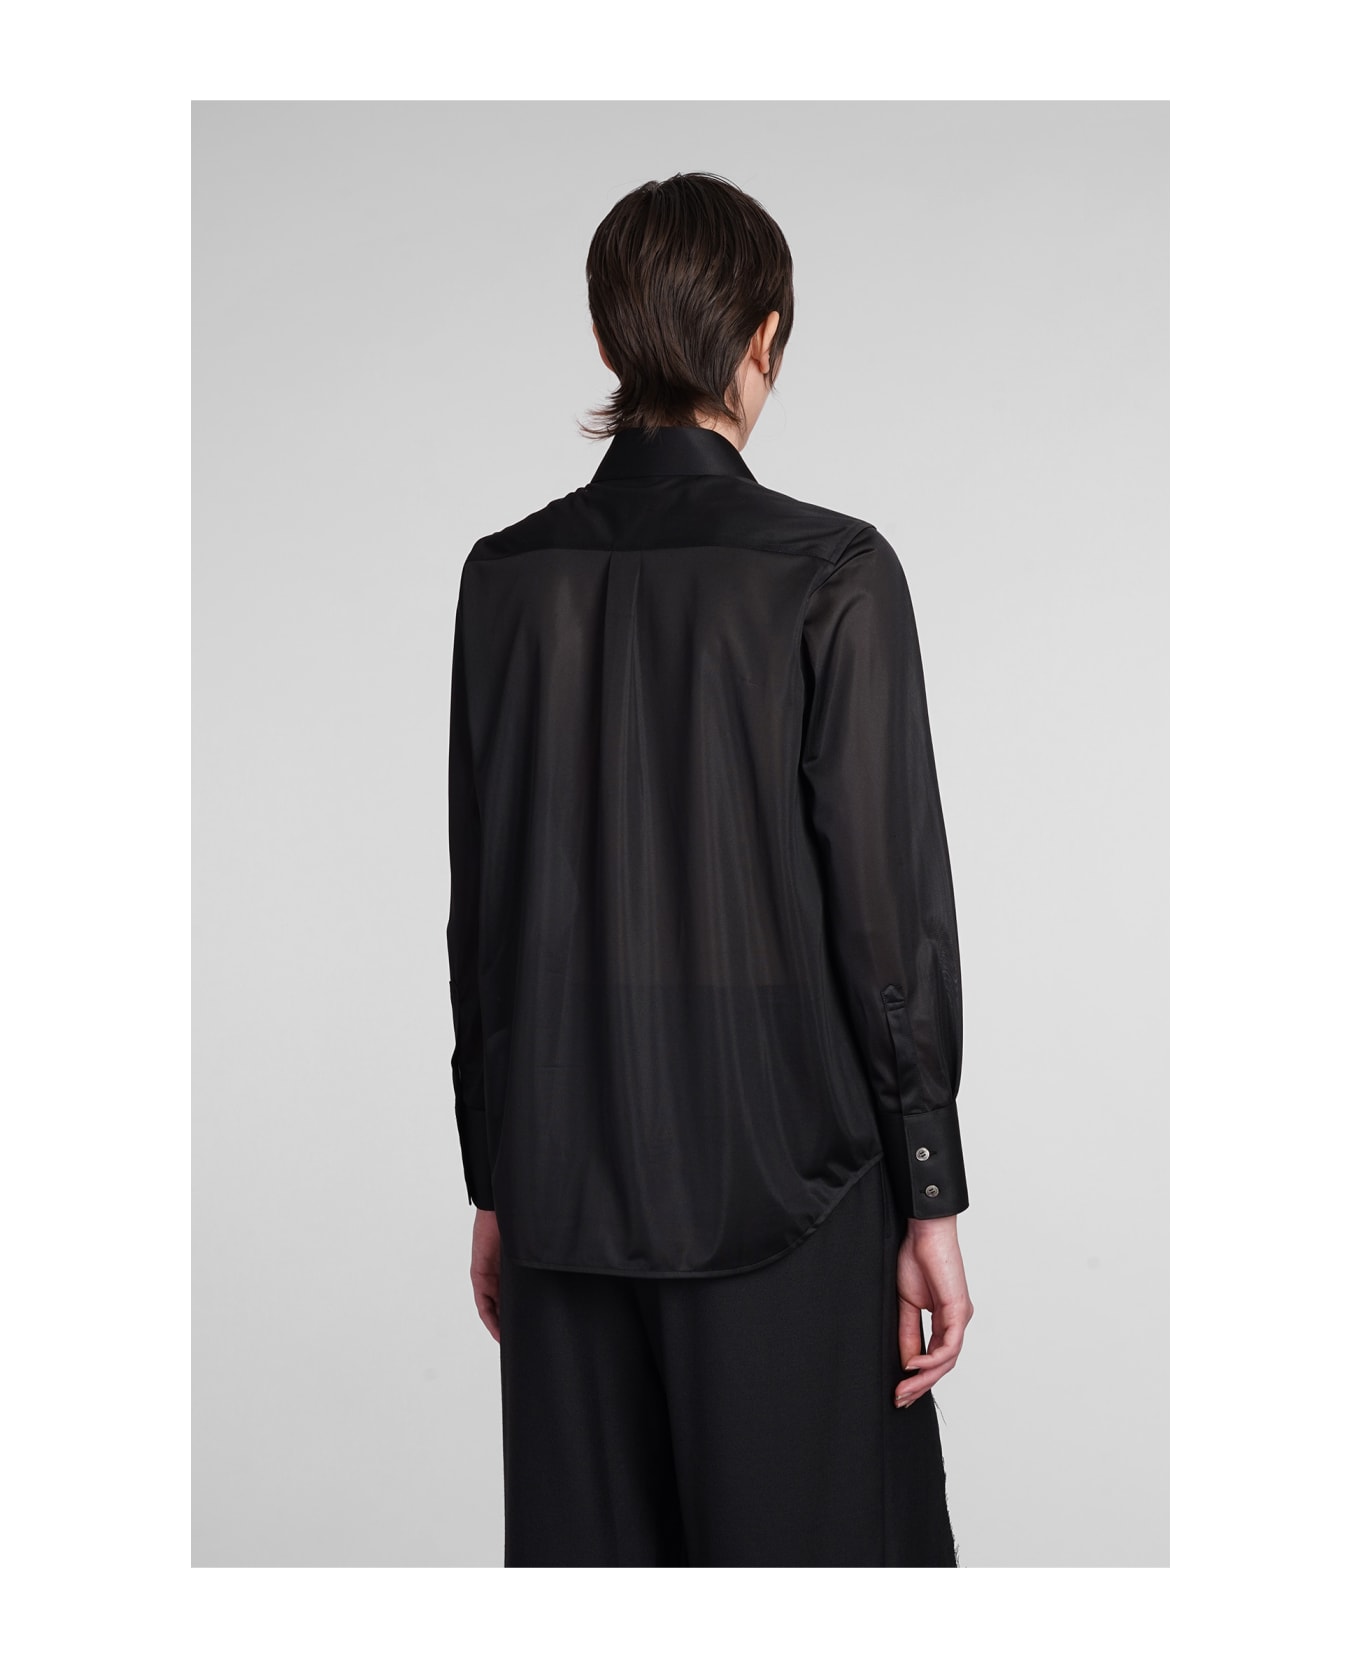 Comme des Garçons Shirt In Black Polyester - black シャツ